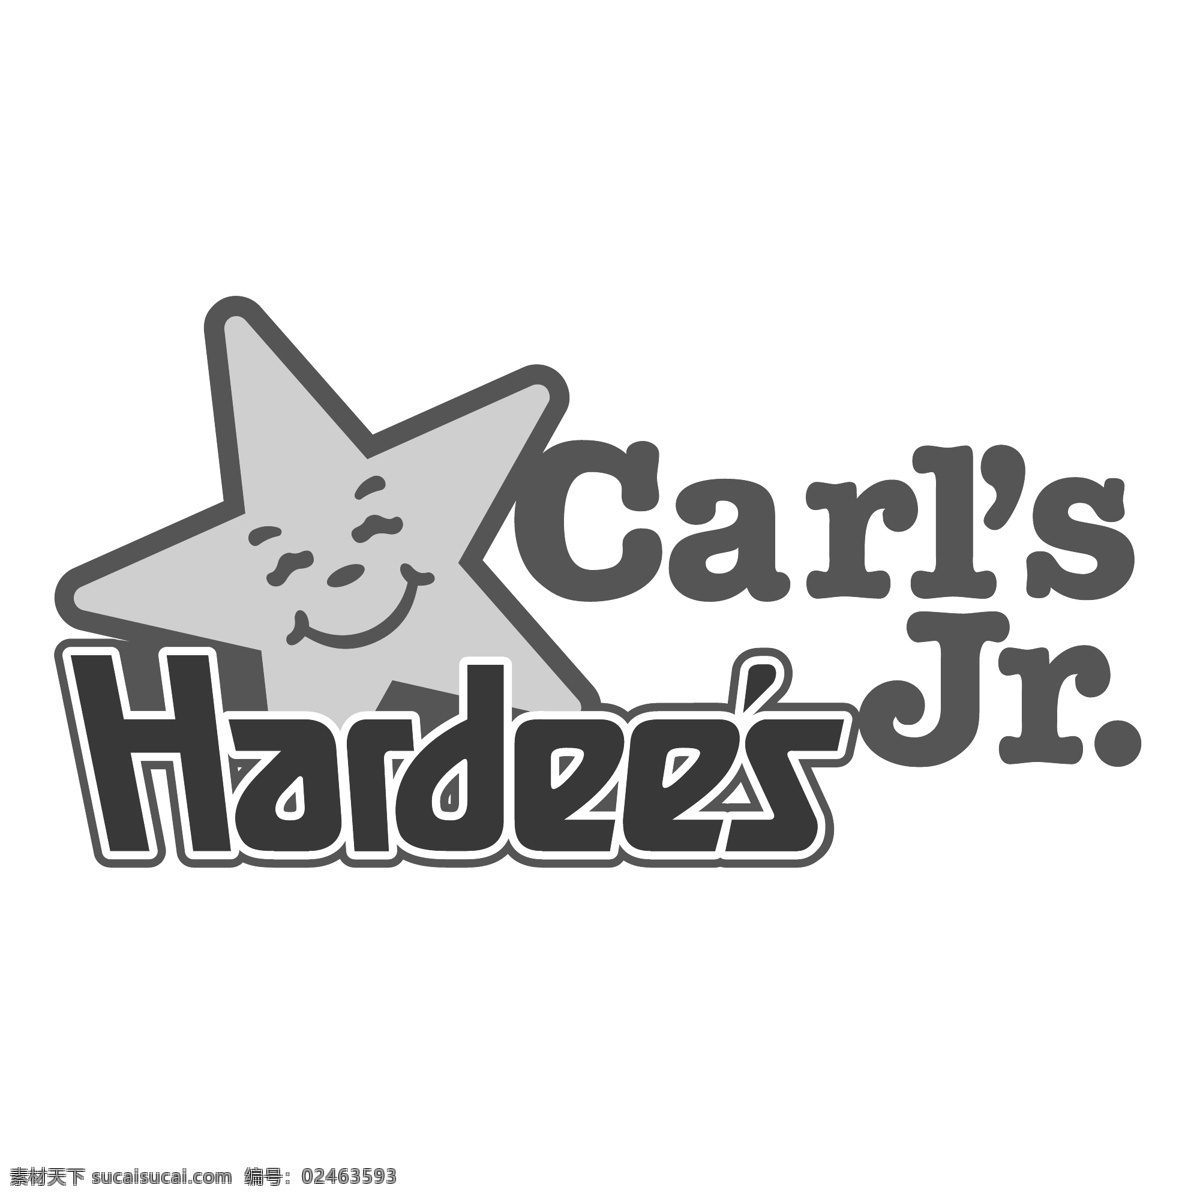 哈迪斯2 哈迪斯 哈迪斯的标志 哈迪斯的餐馆 logo 矢量 标志哈迪斯 哈迪斯eps 矢量哈迪斯 矢量图 建筑家居